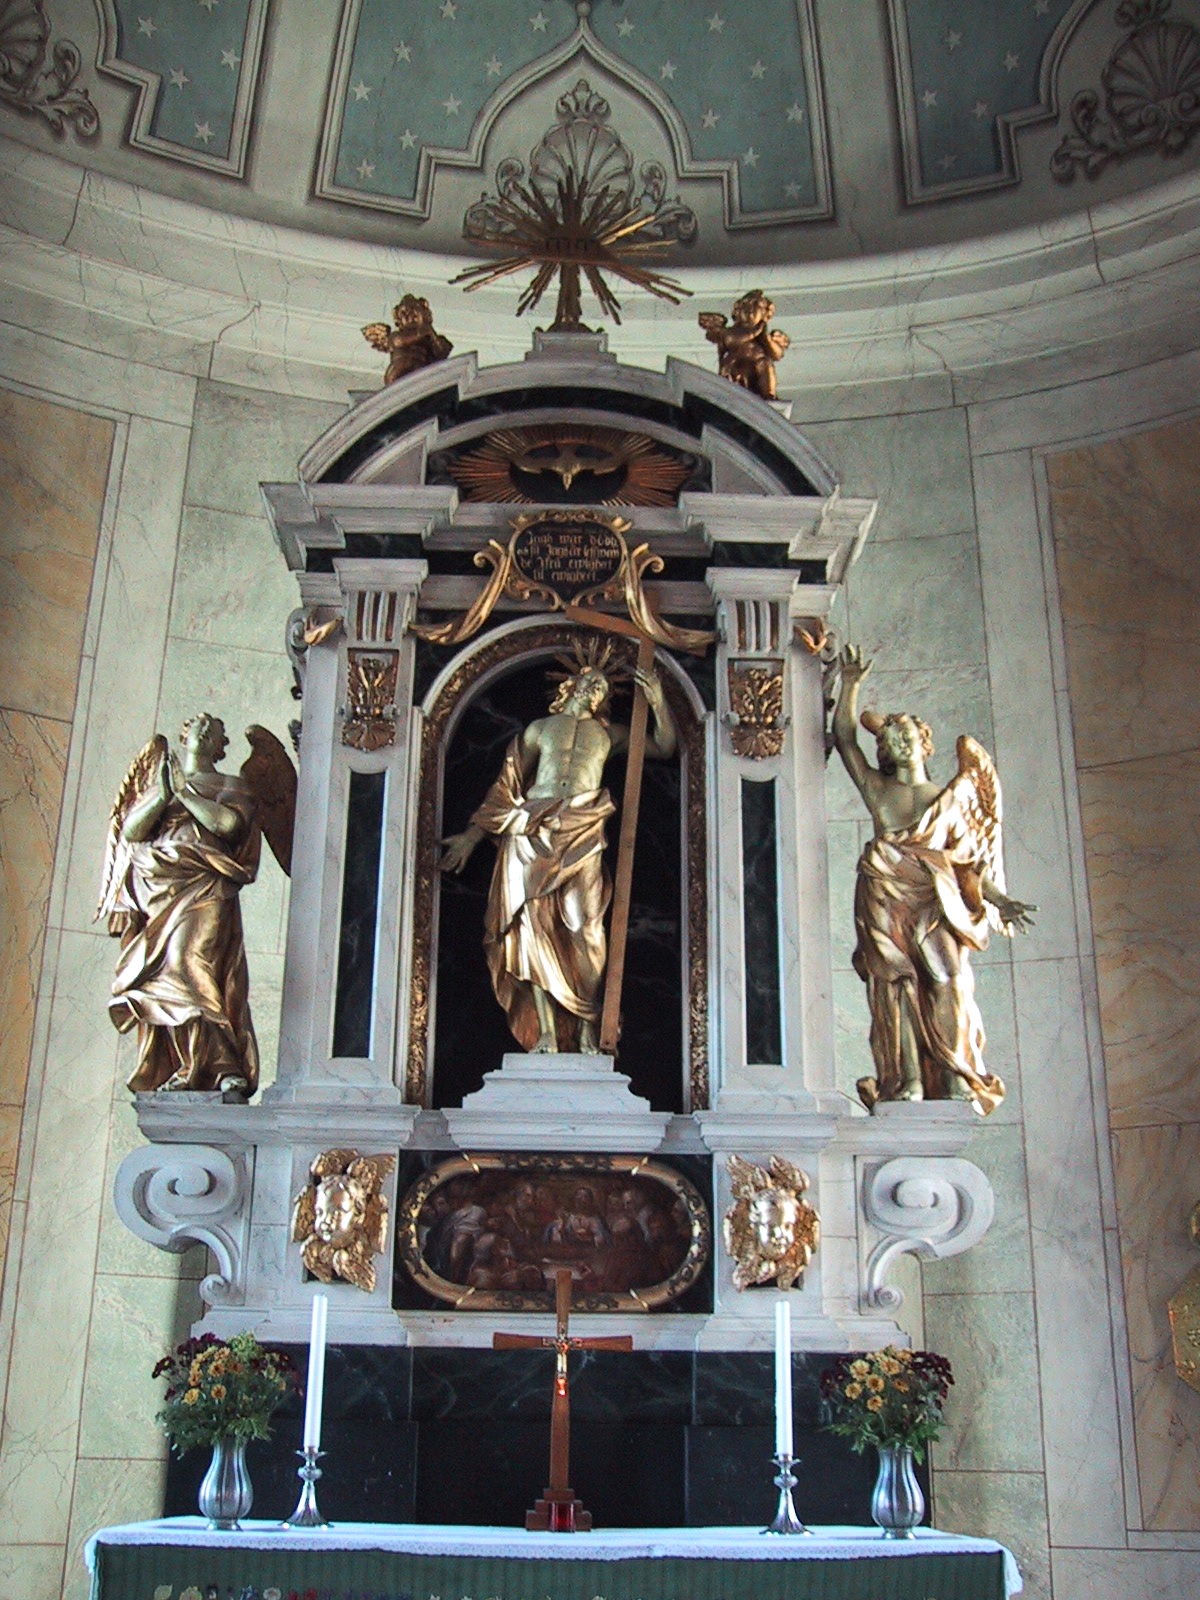 Altaruppsatsen i barockstil är överflyttad från den tidigare kyrkan.

